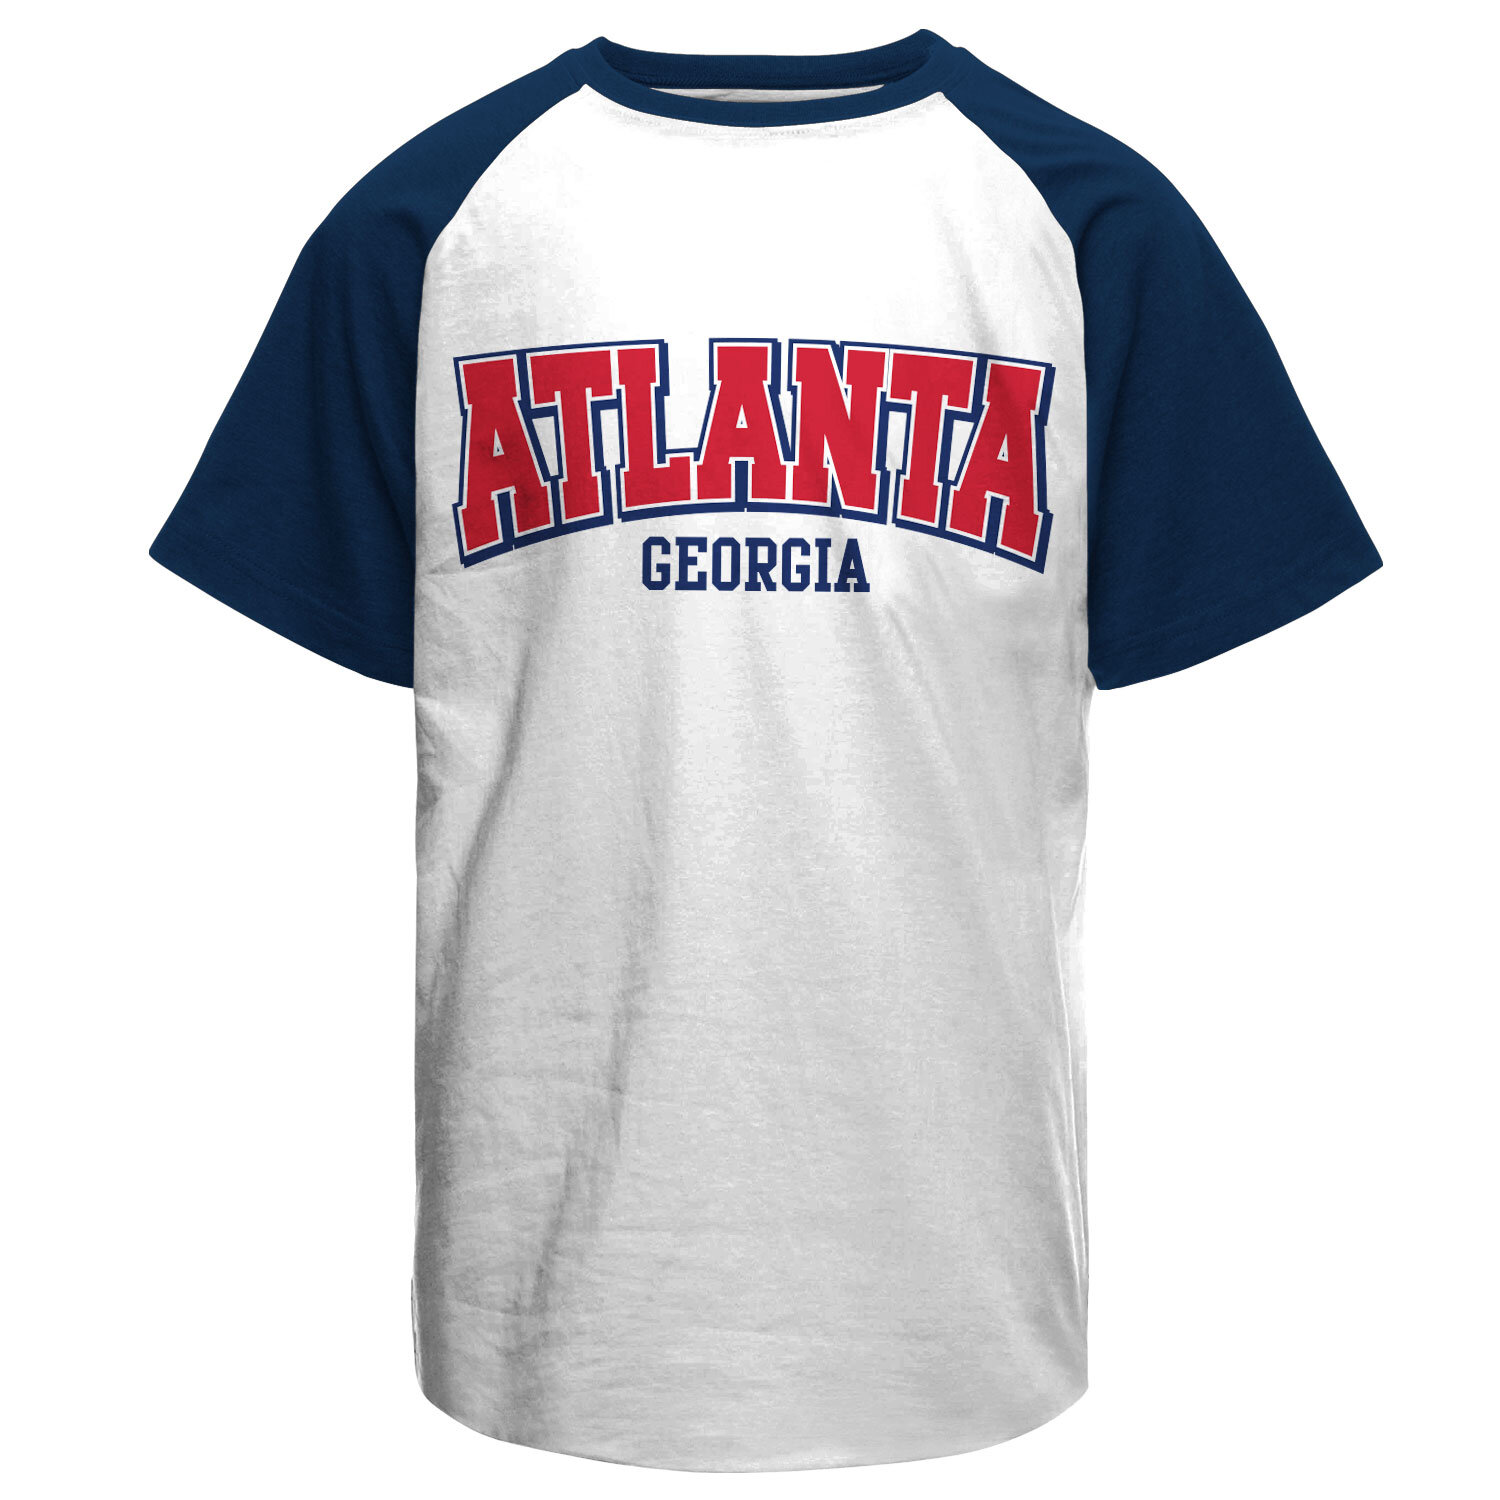 Atlanta - Georgia Baseball T-Shirt